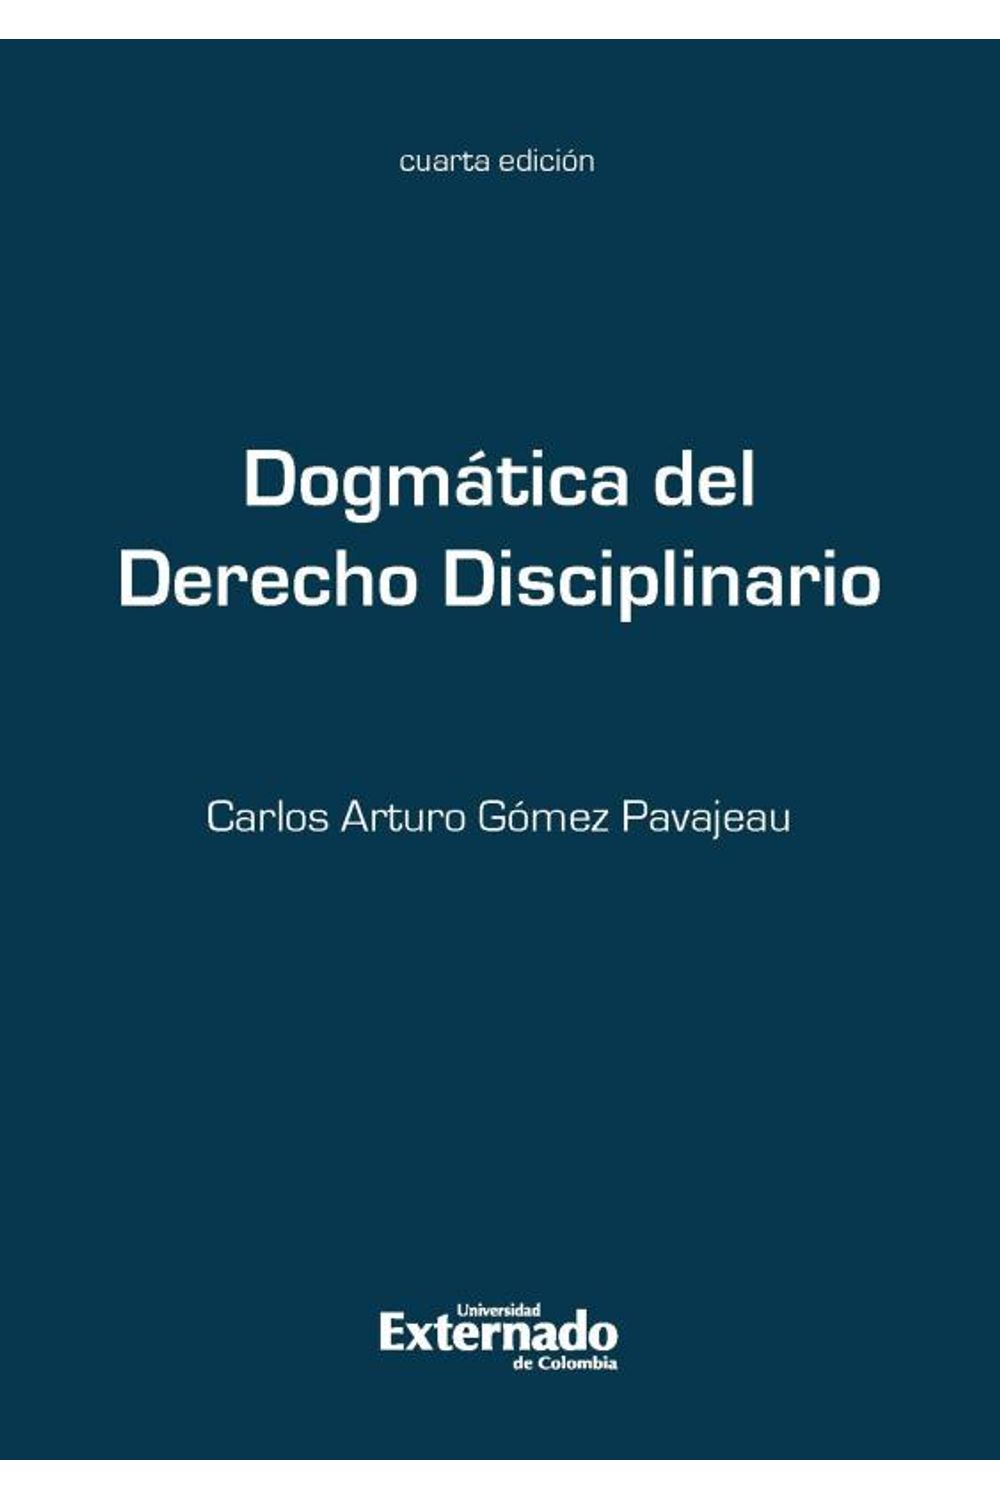 bw-dogmaacutetica-del-derecho-disciplinario-4ed-u-externado-de-colombia-9789587104820